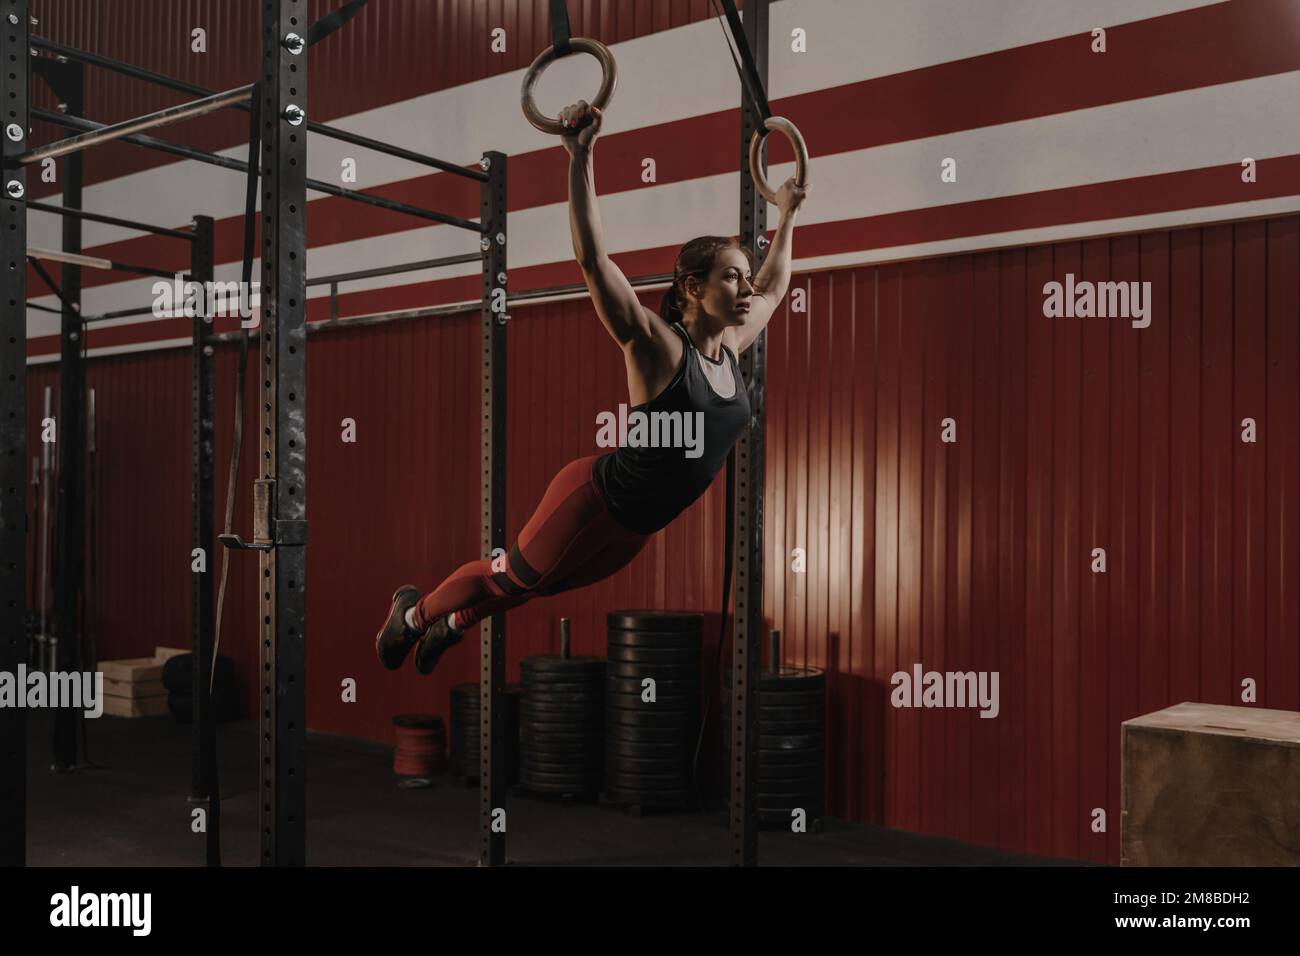 Jeune femme crossfit balançant sur des anneaux de gymnastique. Athlète féminine faisant des exercices de muscle-ups sur les anneaux à la salle de gym. Concept de motivation sportive. Copier l'espace Banque D'Images